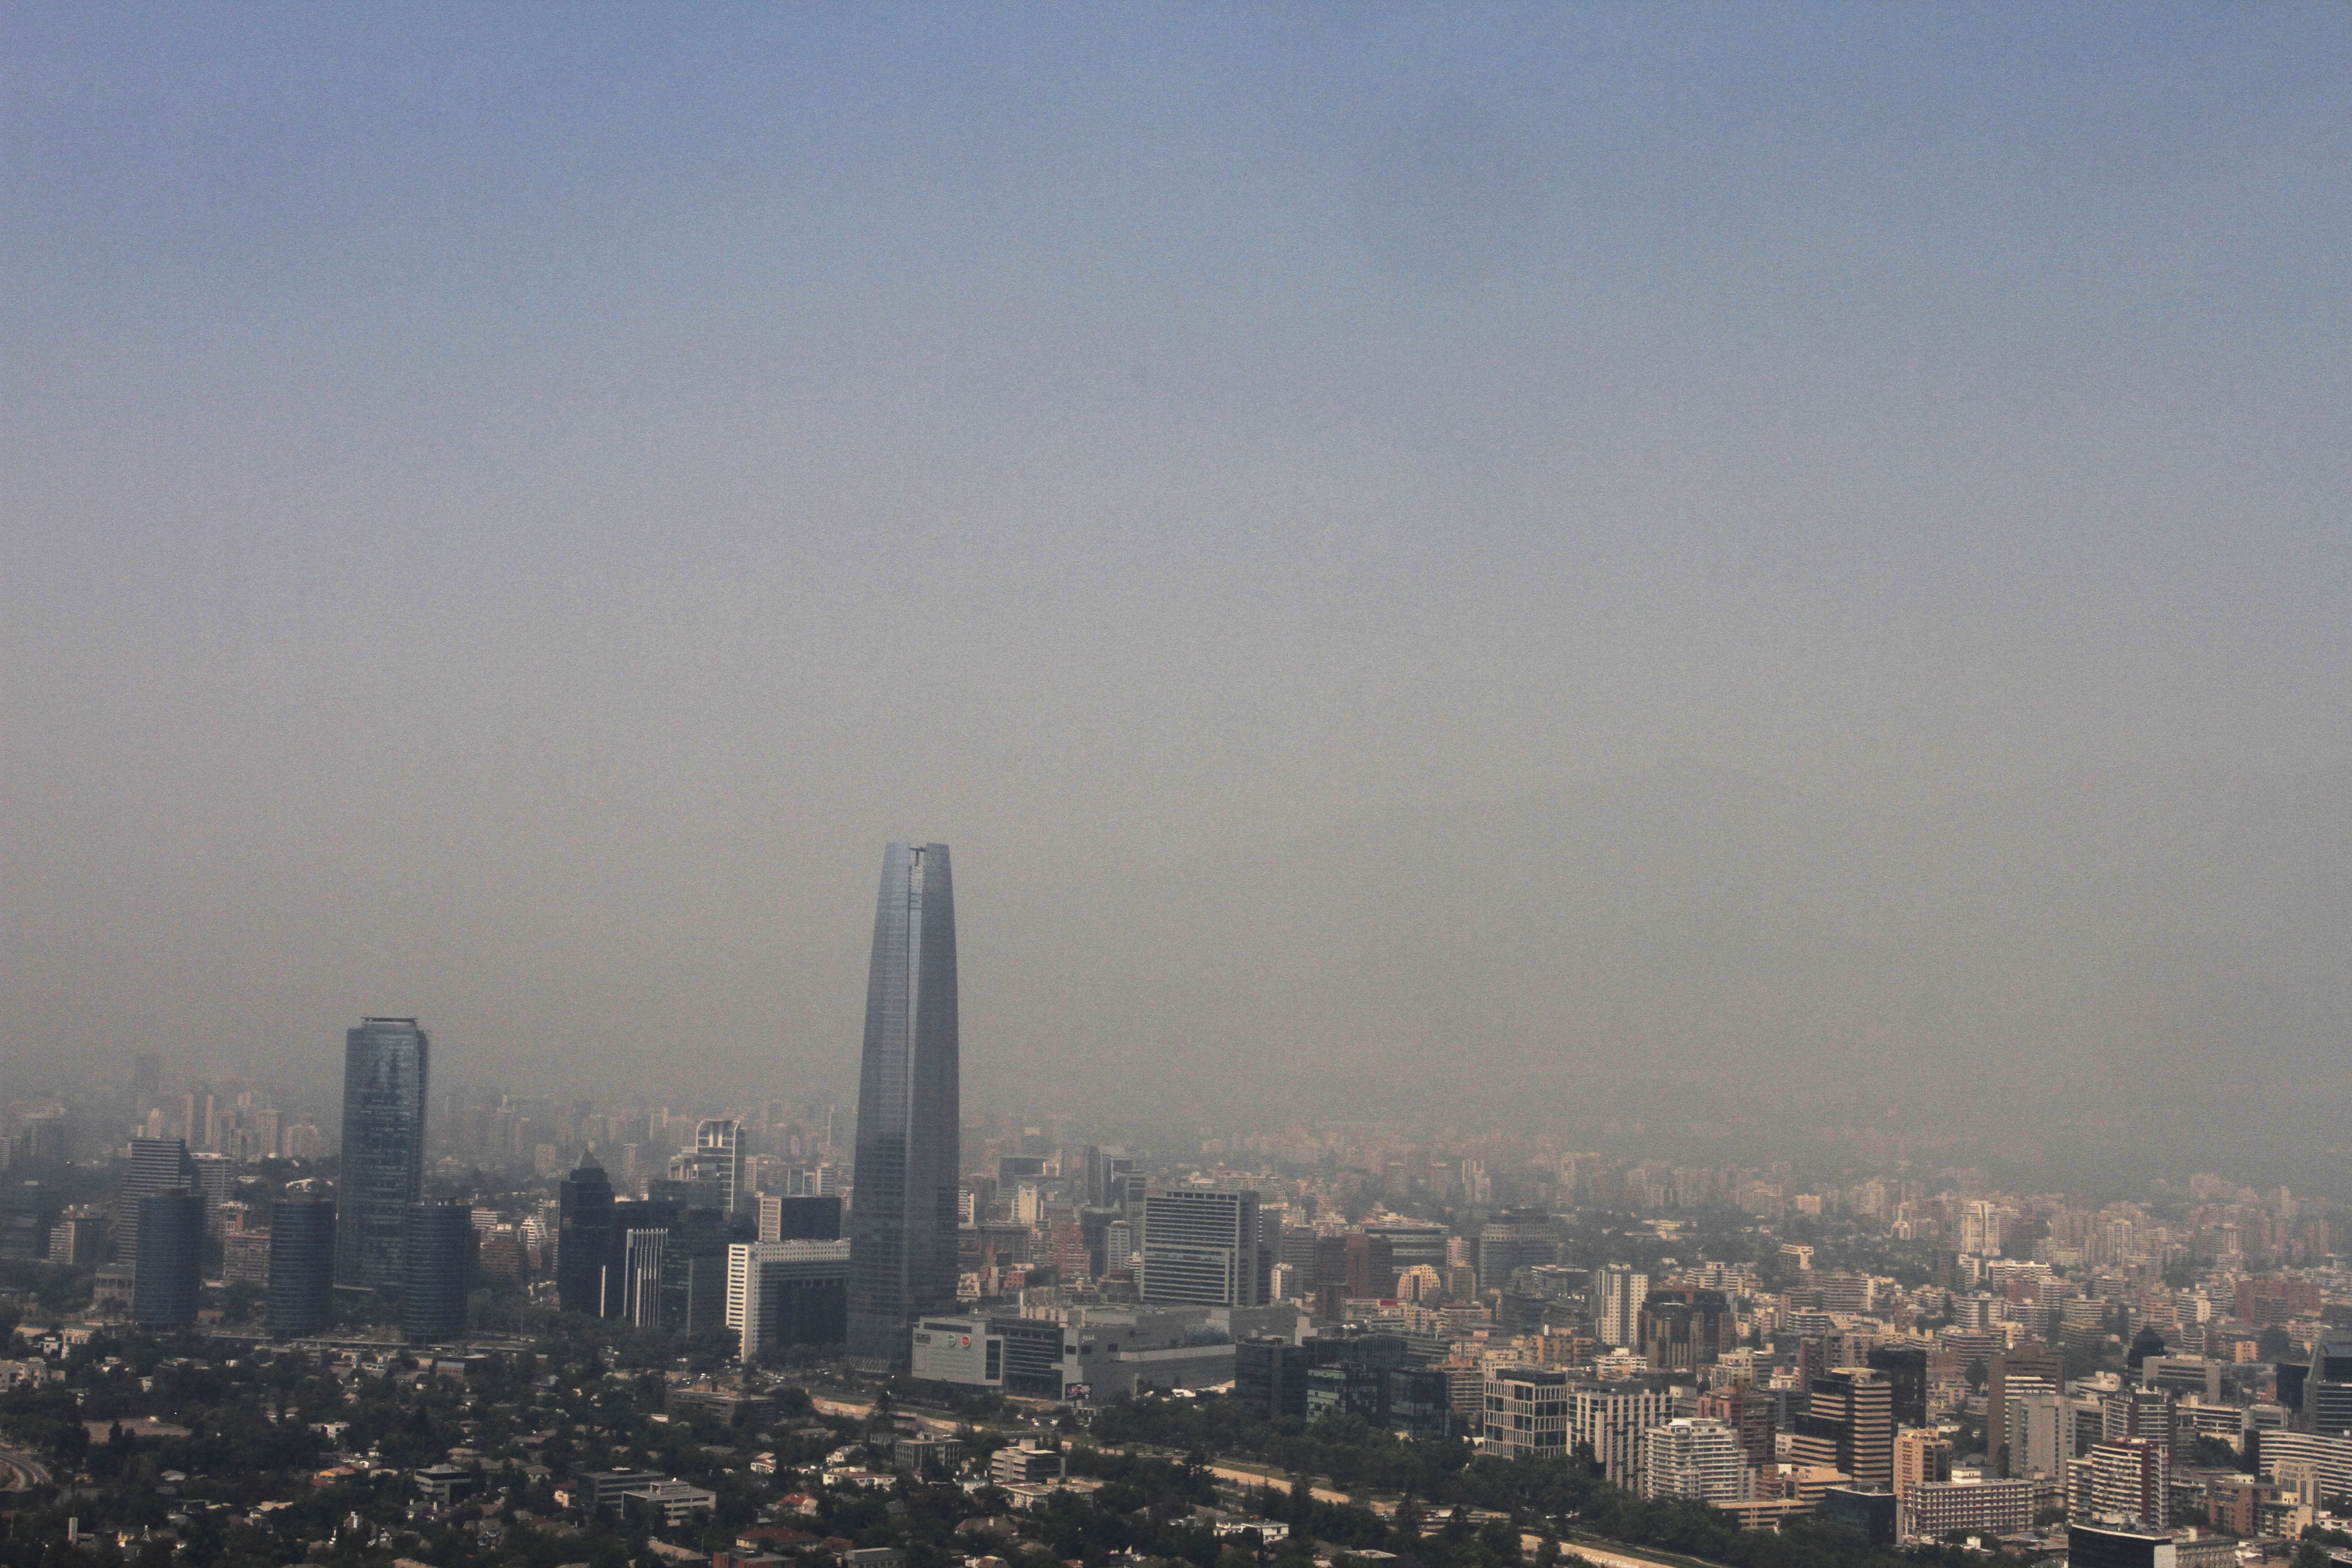 Vista panoramica de Santiago bajo el humo de los incendios forestales que afectan a la Capital